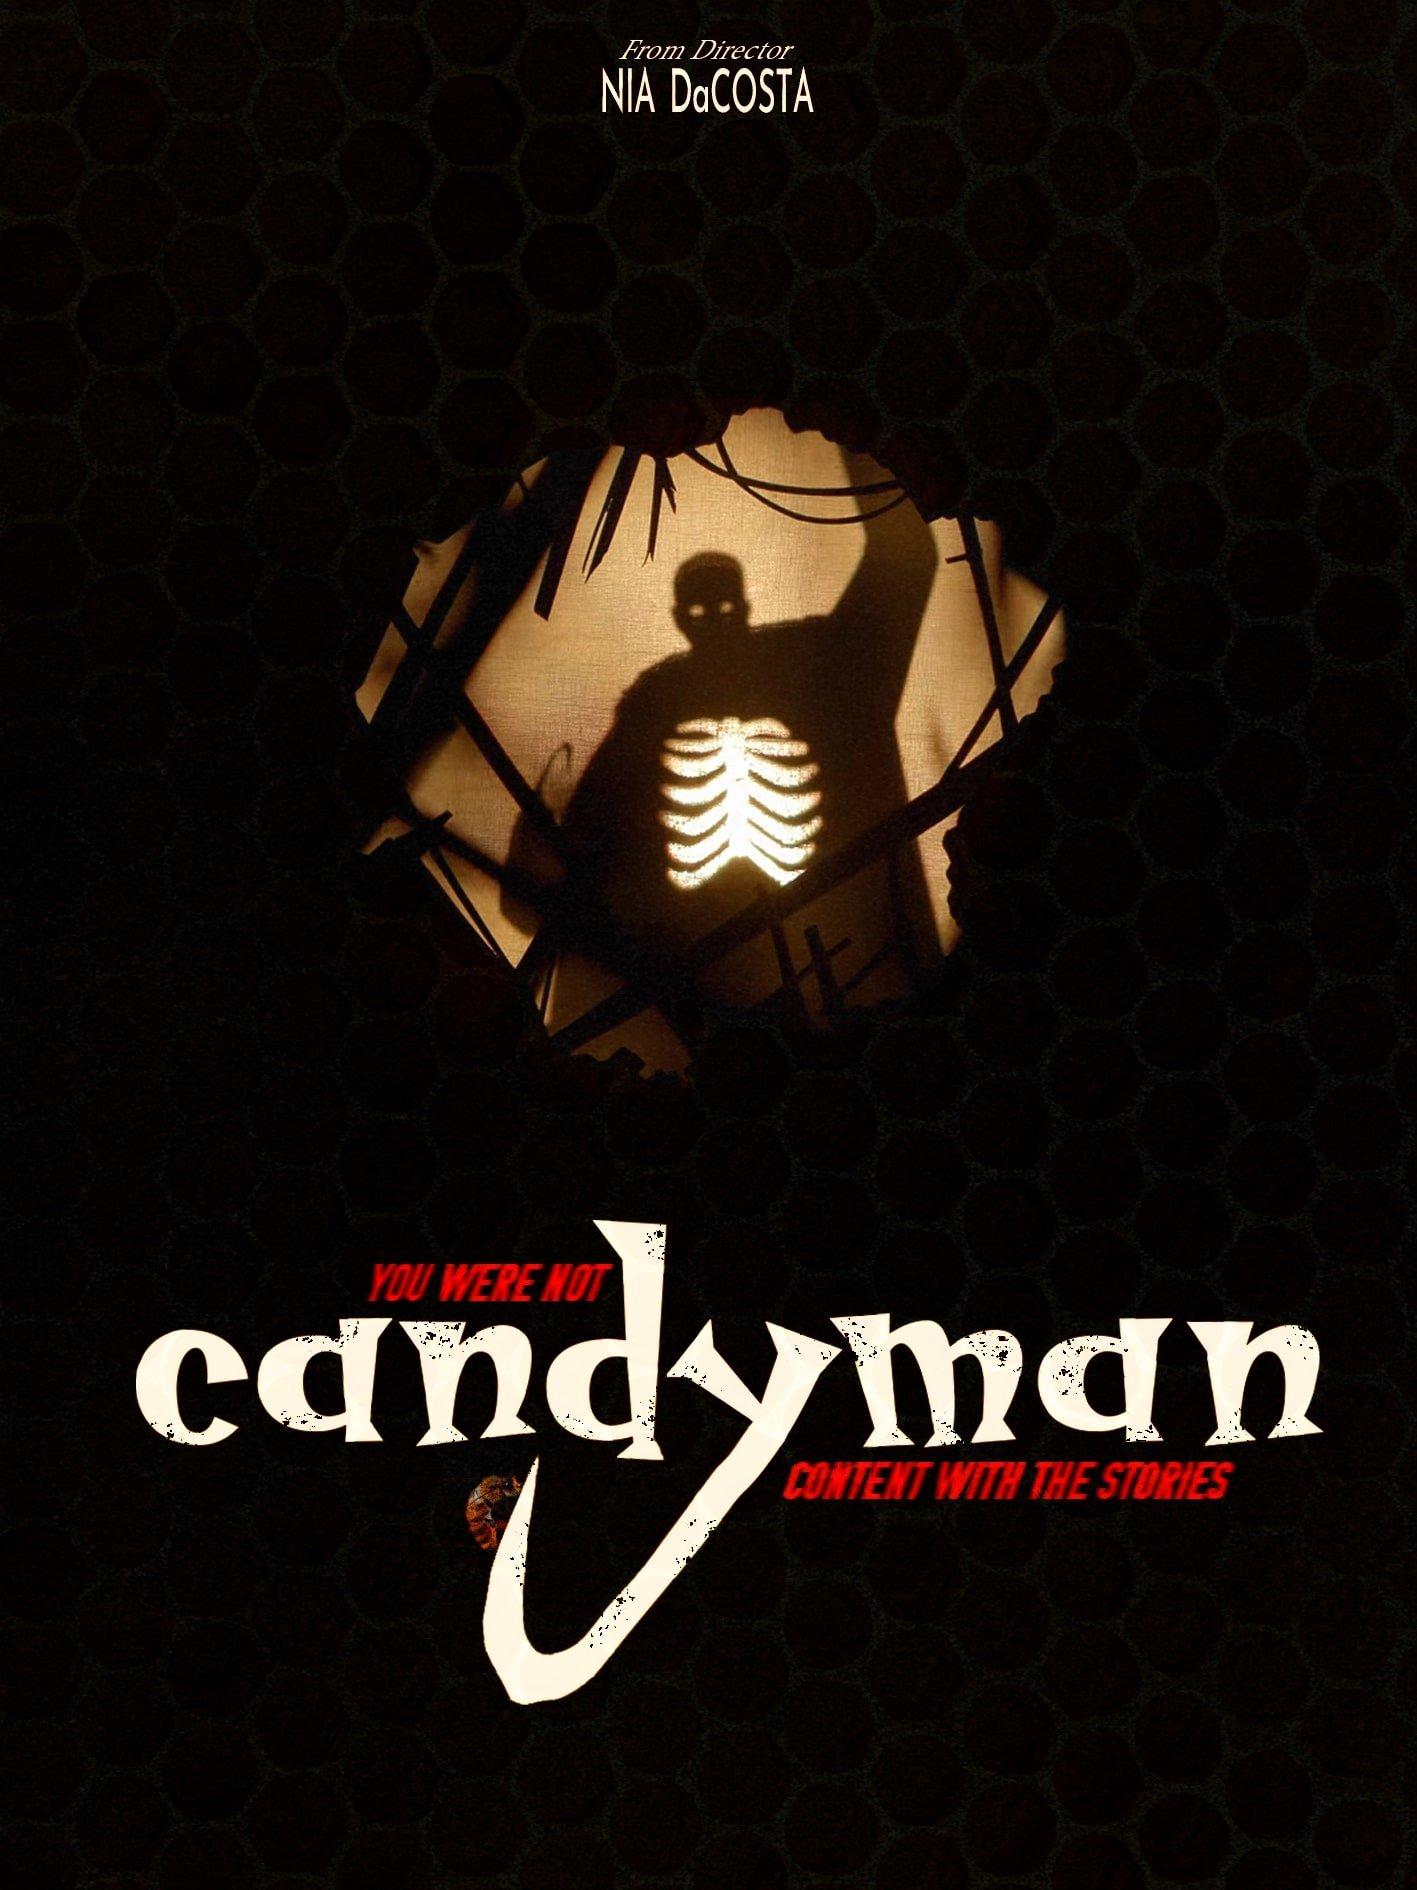 Tâm điểm của Candyman là bóng ma với một tay là móc câu (Ảnh: Internet).